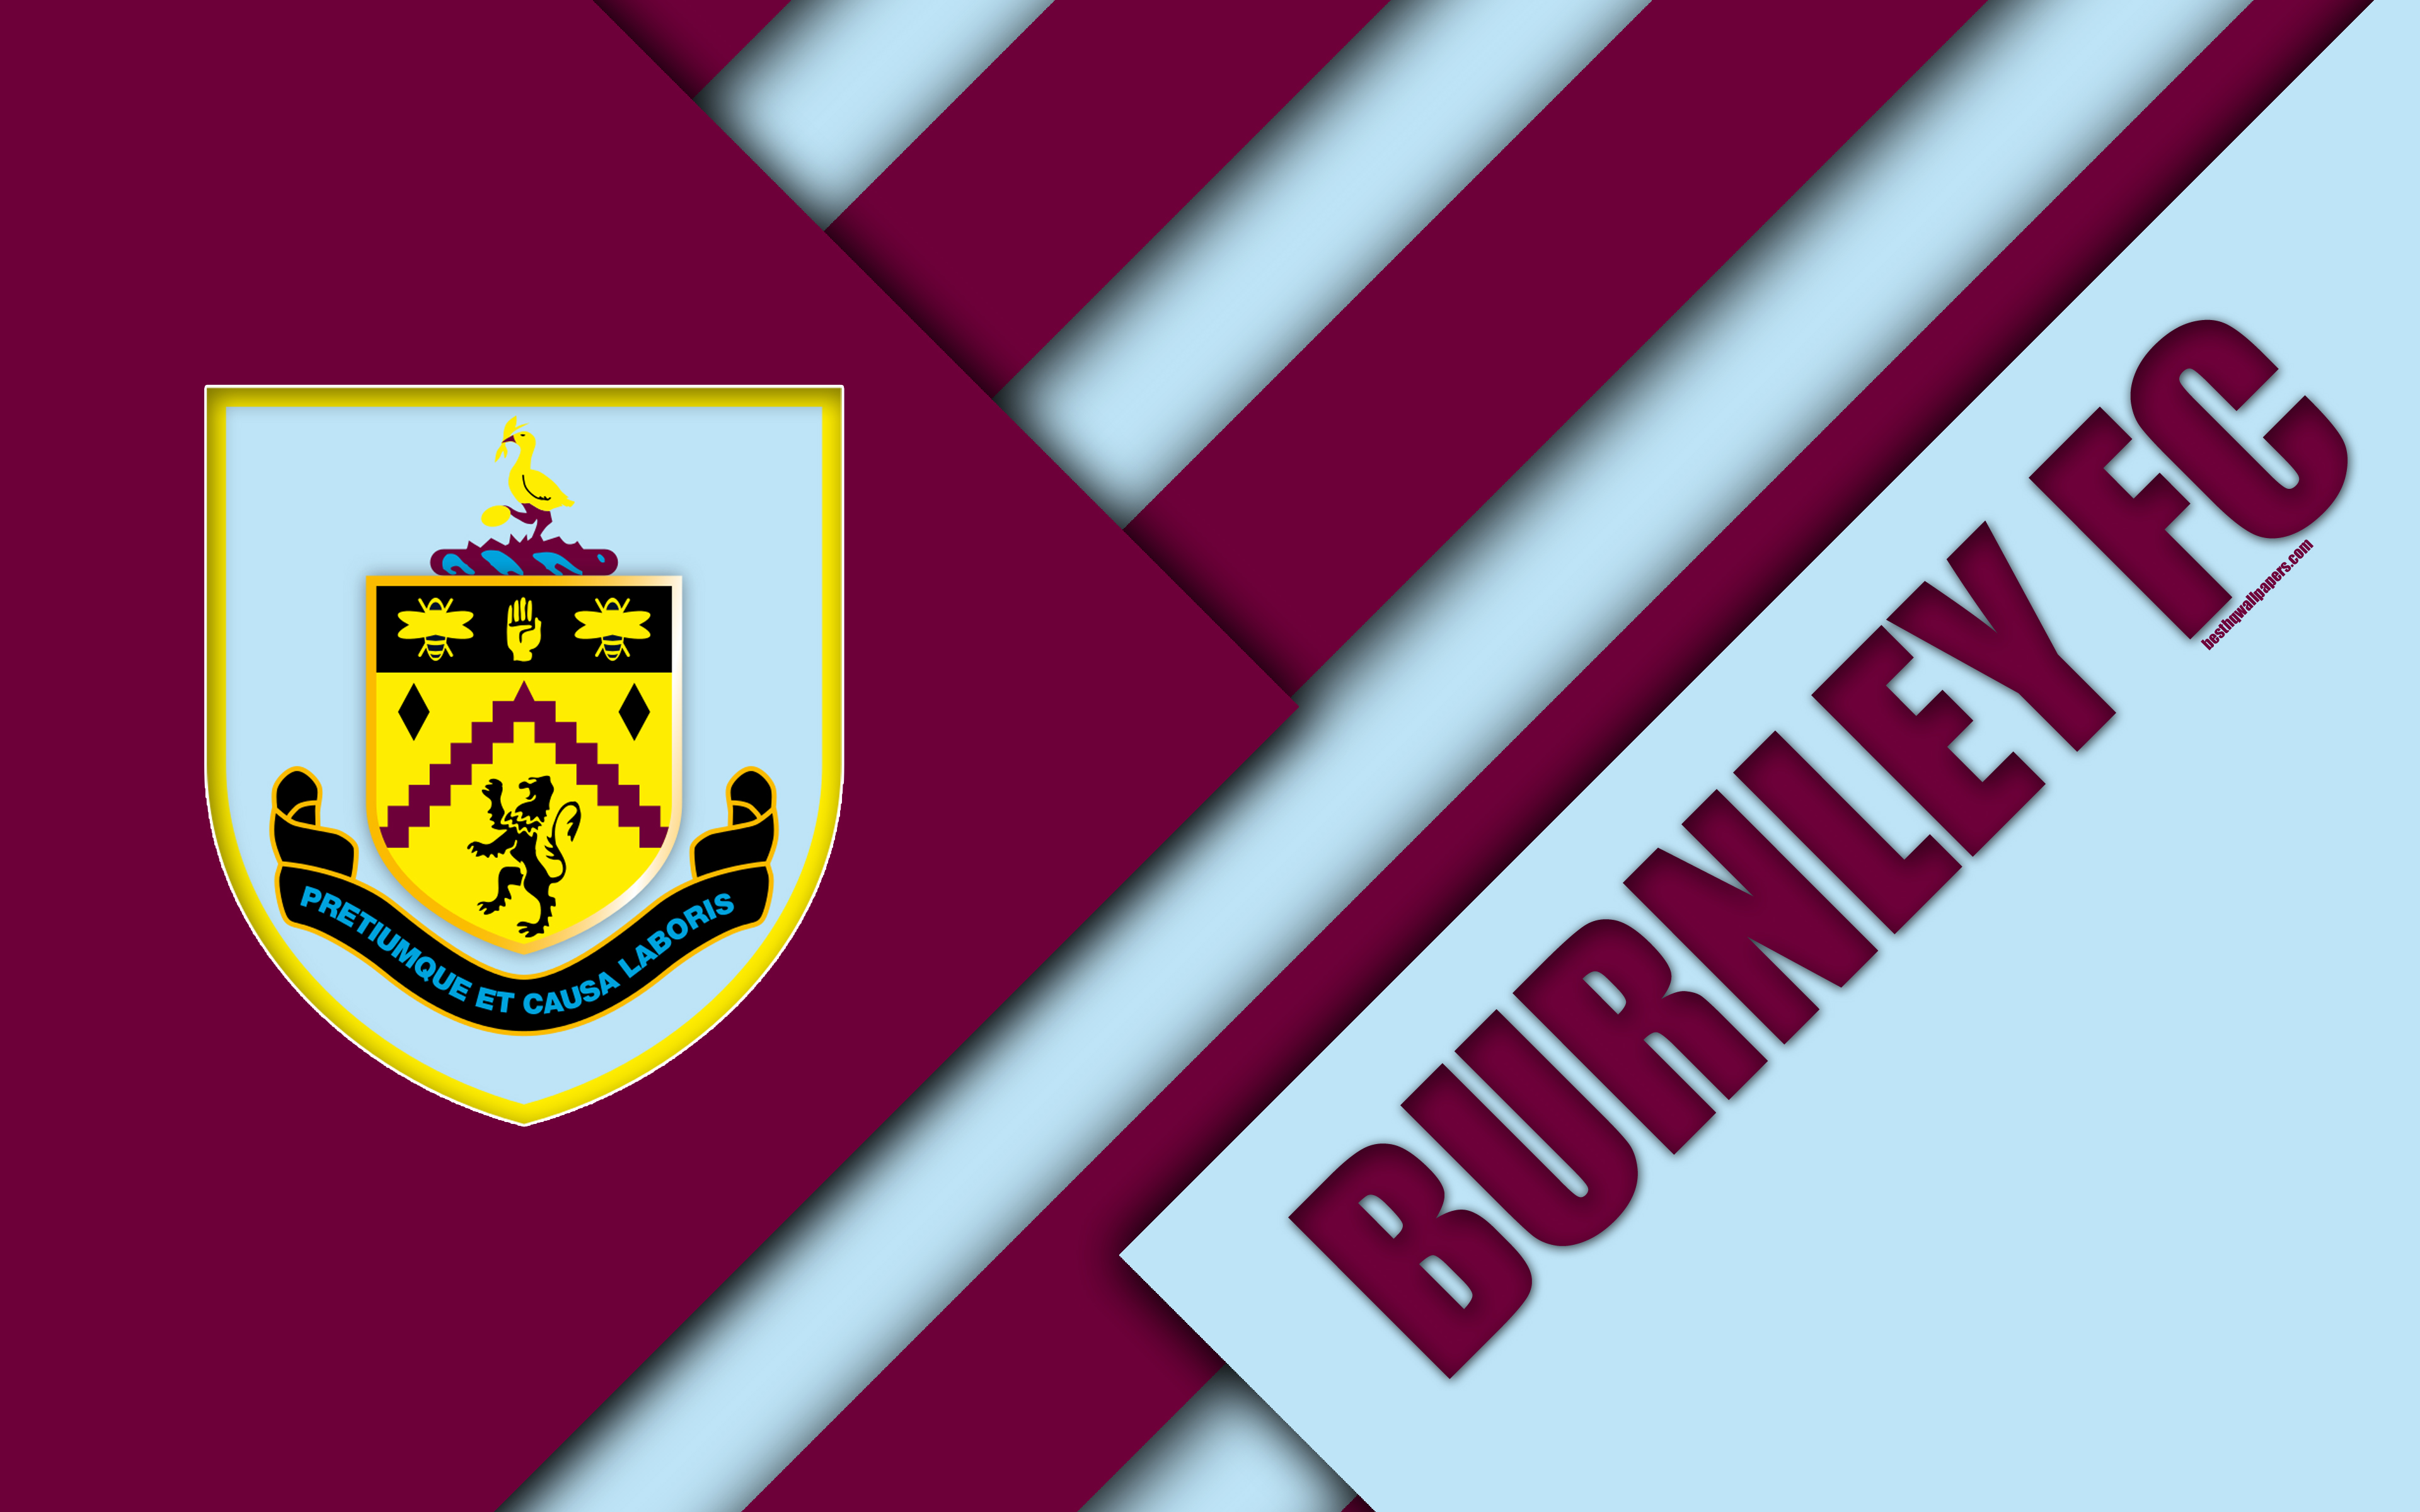 Download wallpaper Burnley FC, logo, 4k, material design, purple